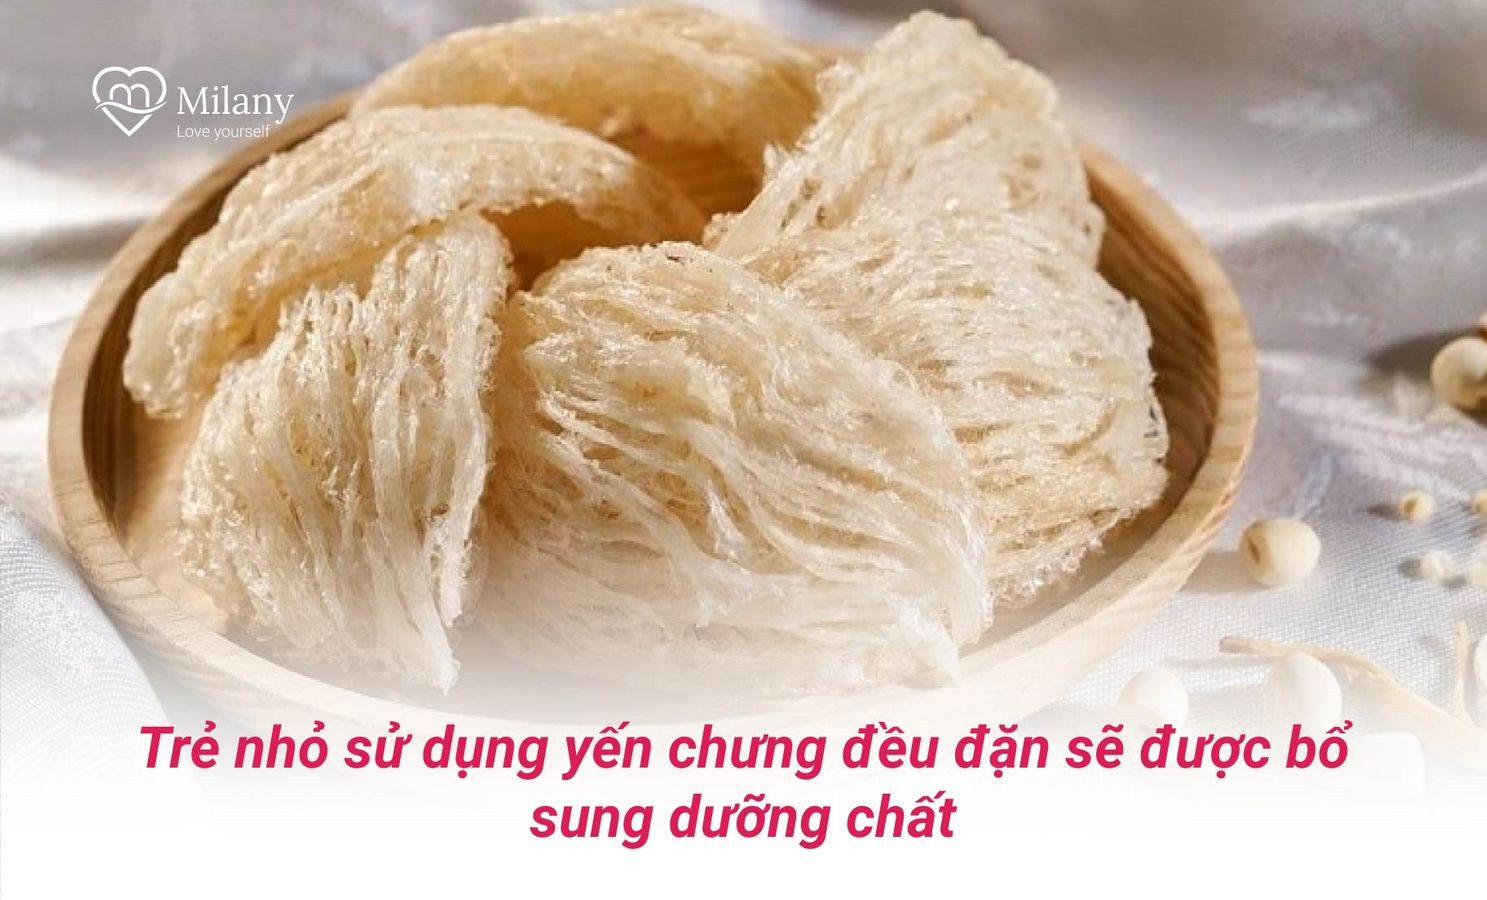 yen-chung-bo-sung-duong-chat-cho-tre